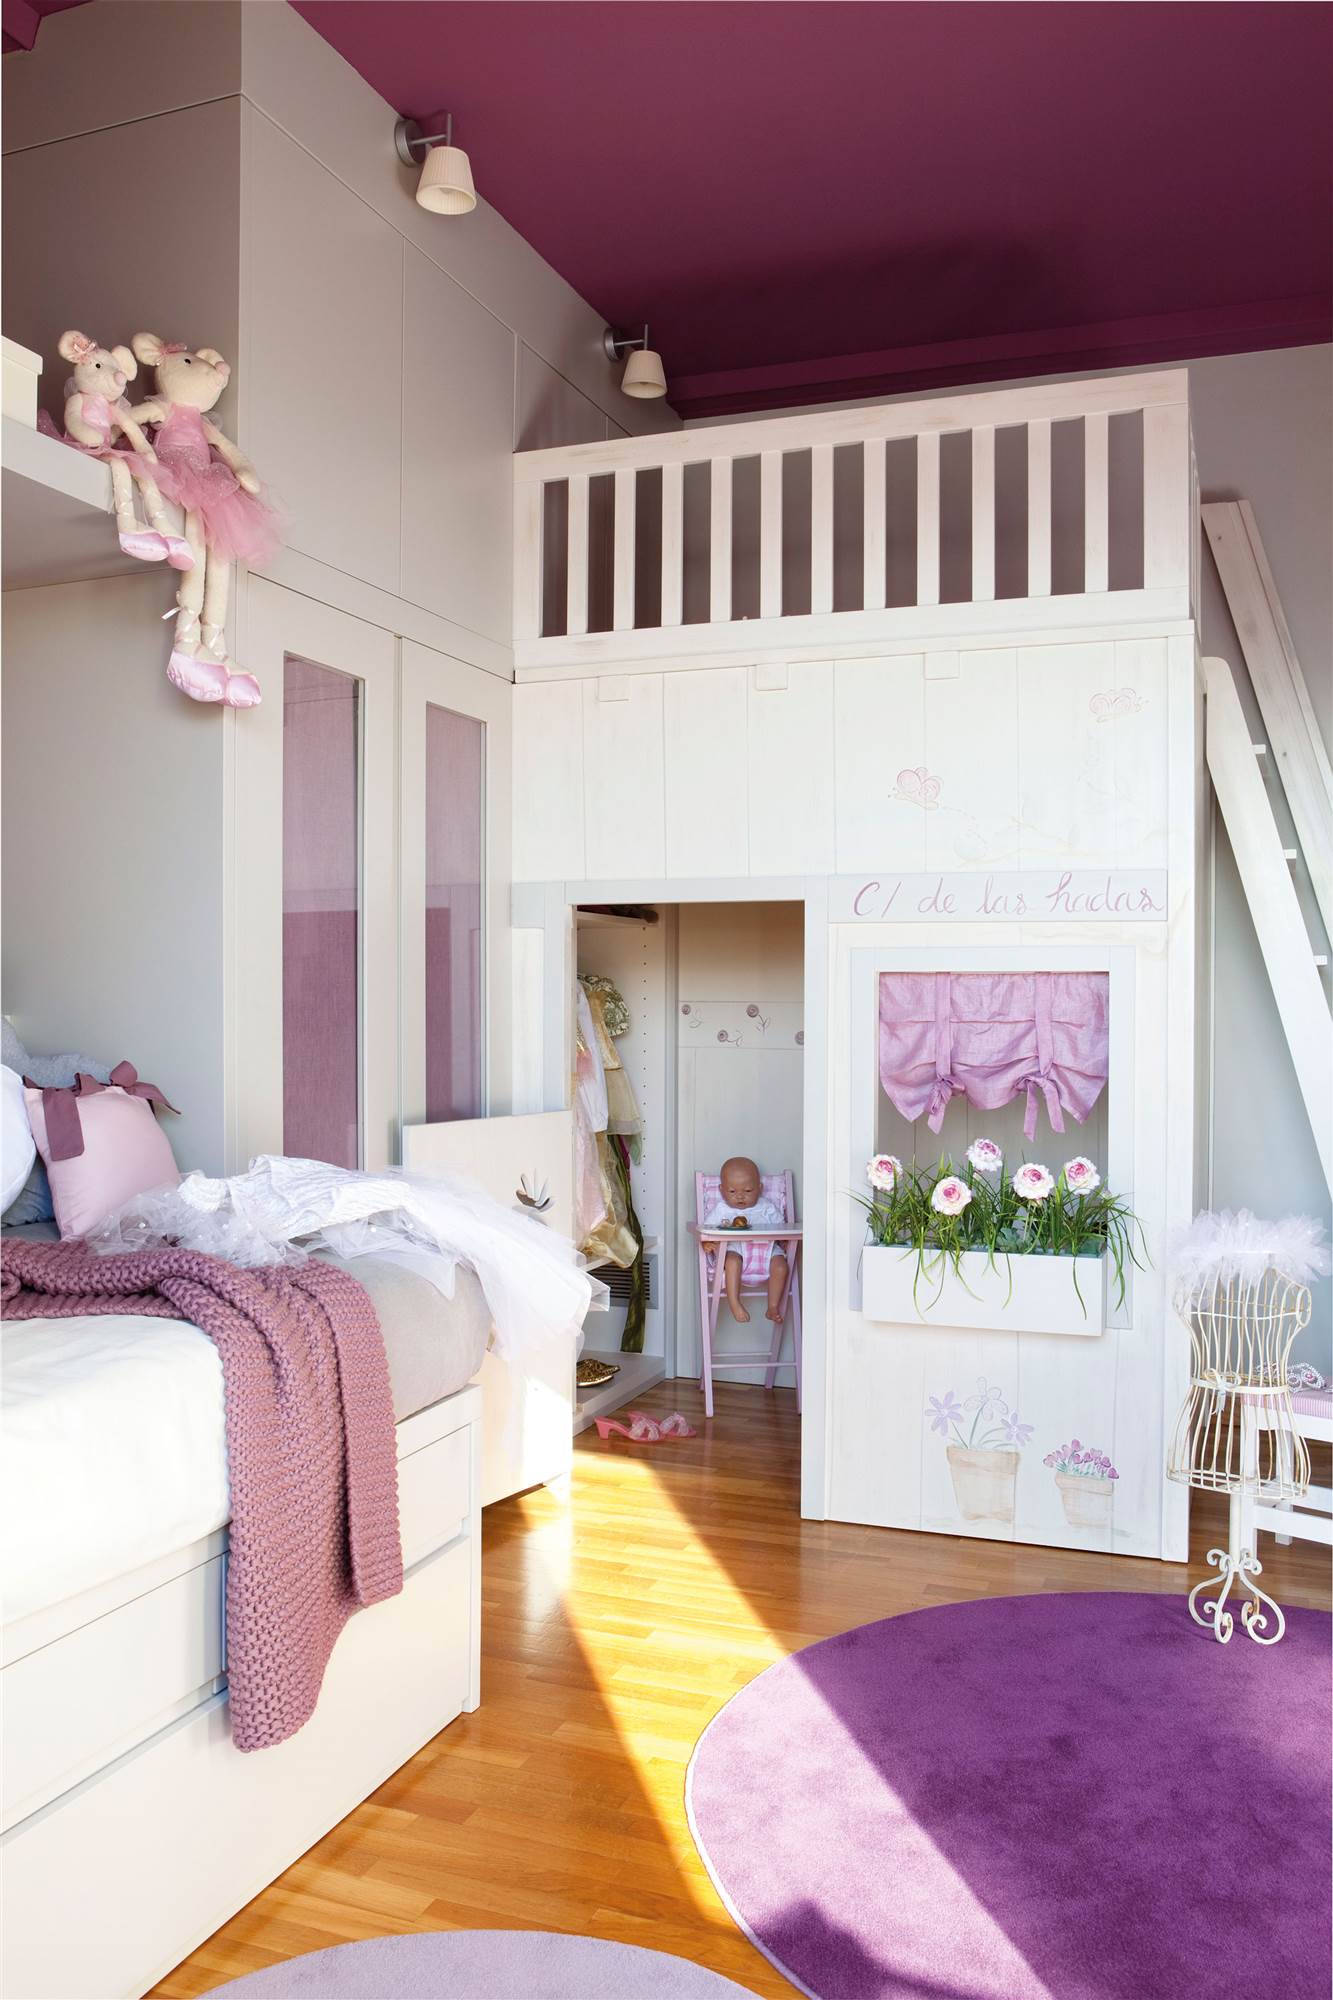 Dormitorio infantil en morado con silla con cajones, alfombras y altillo con espacio para guardar.